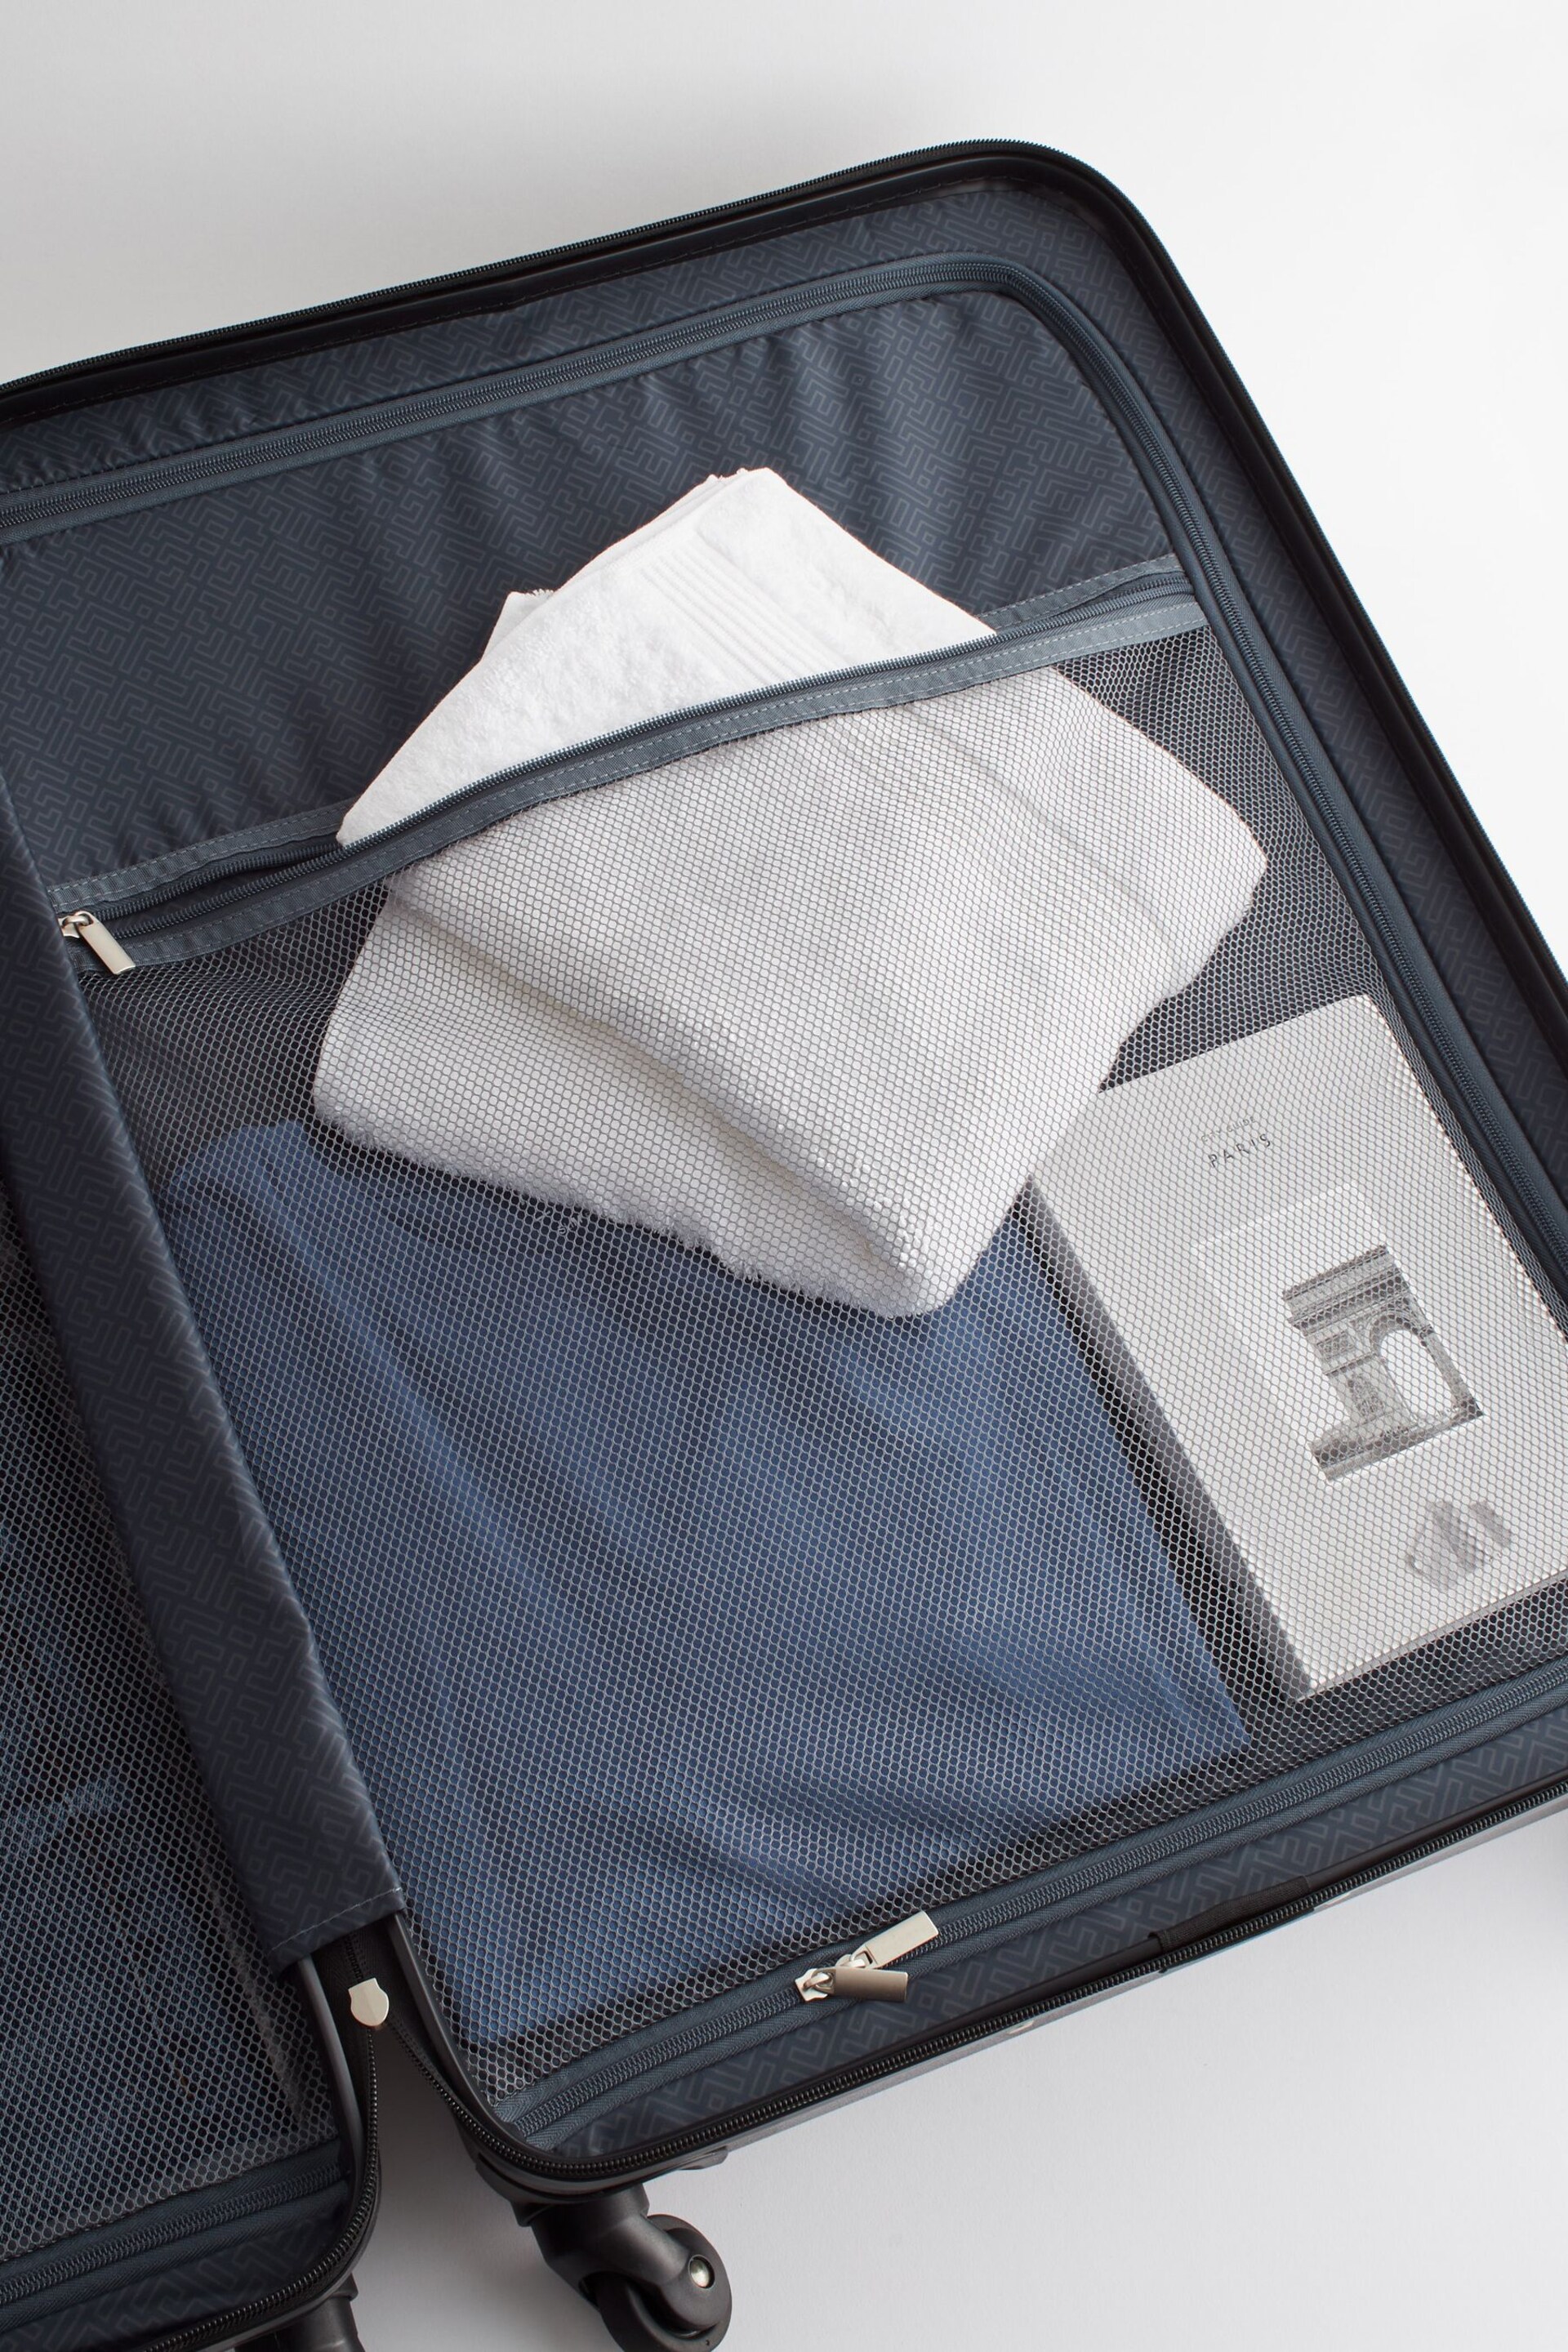 Grey Large Next Suitcase - Image 12 of 23